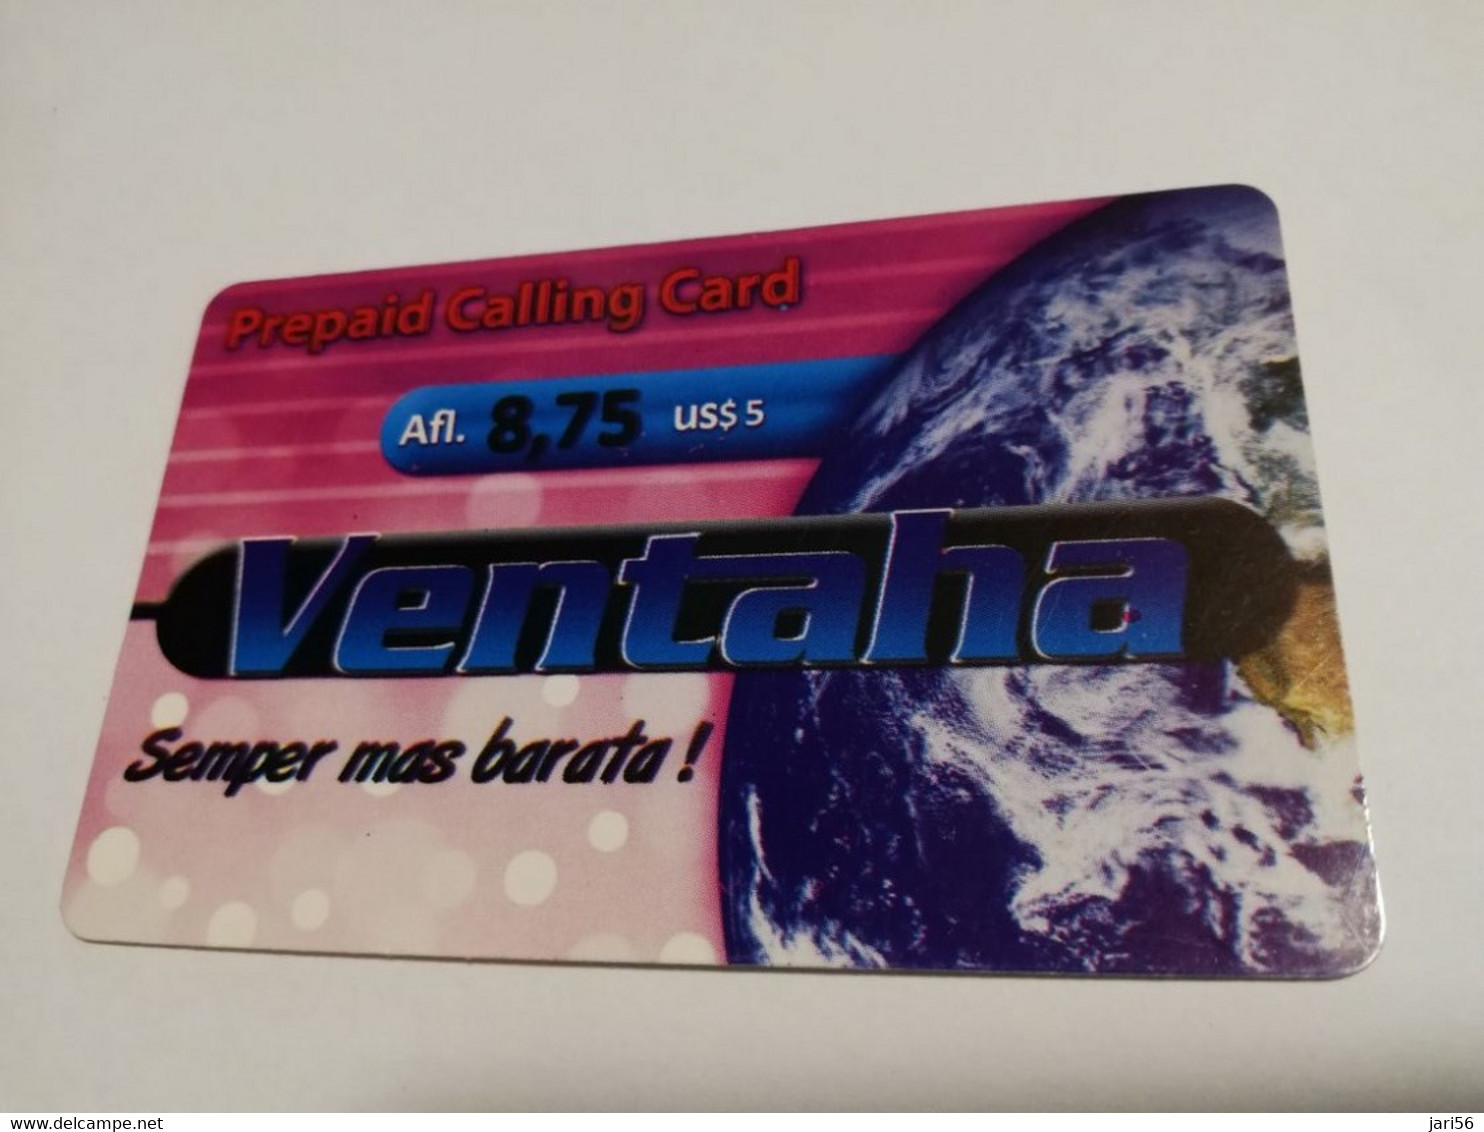 ARUBA PREPAID CARD VENTAHA  AFL 8,75 US 5,-     Fine Used Card  **4024** - Aruba